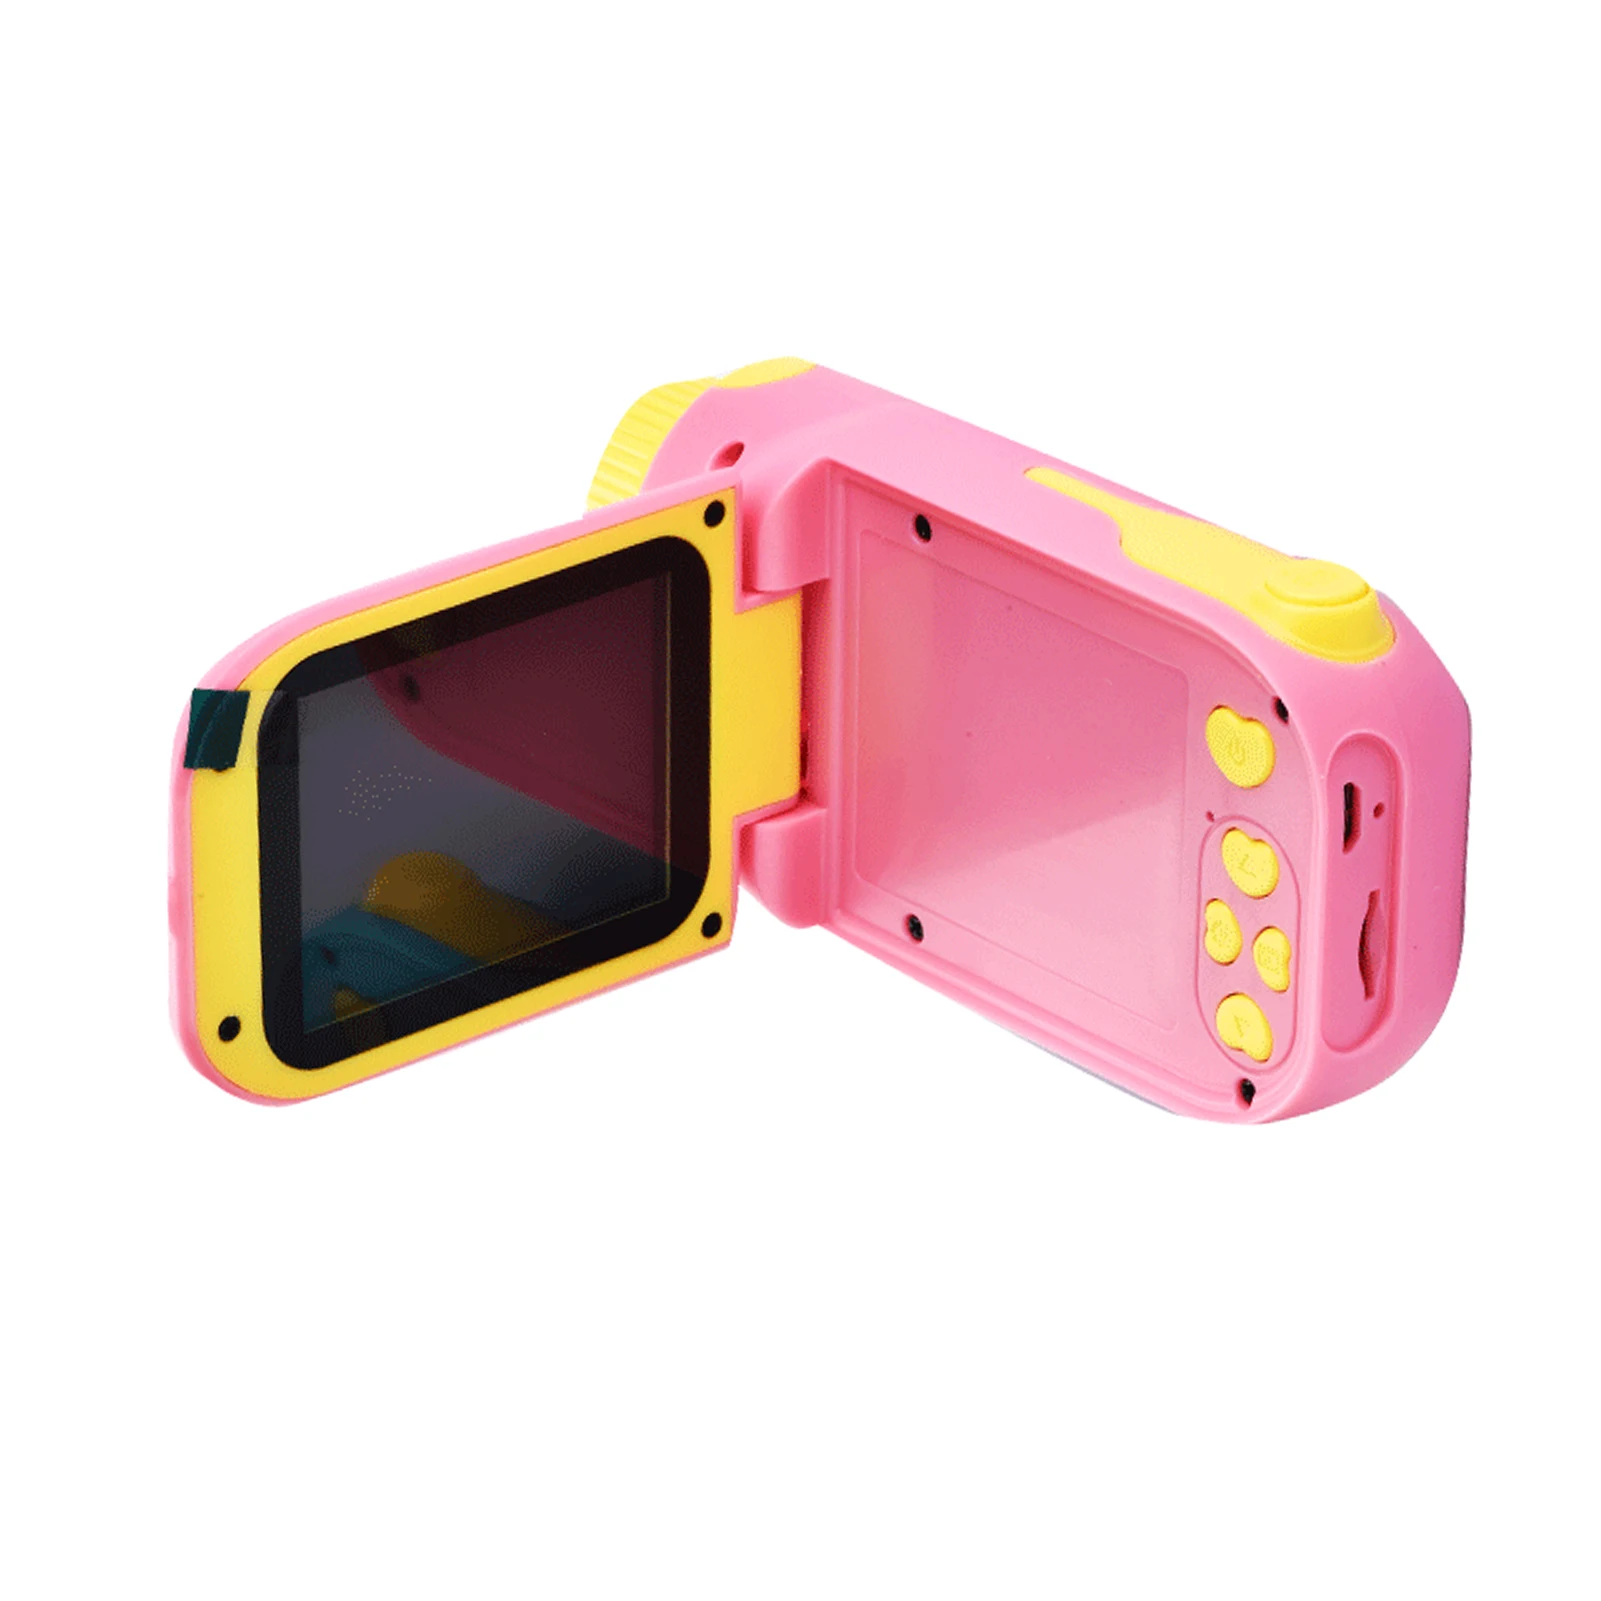 Детская видеокамера высокого разрешения 1080P 20 Мп Портативная мини цифровая камера с большим экраном 2,4 дюйма Подарки на День рождения